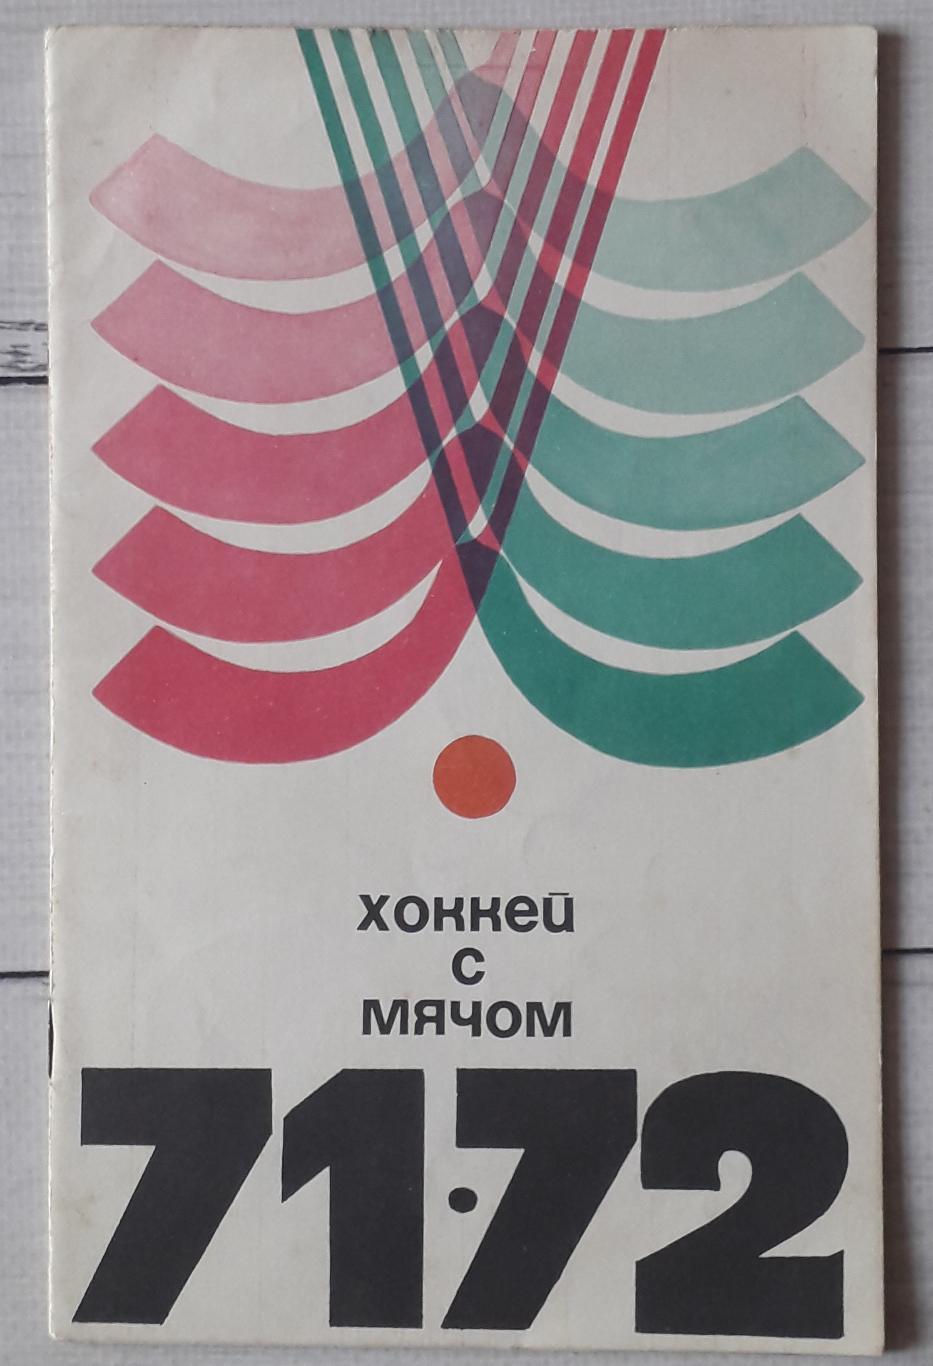 Хоккей с мячом 71/72. ФИС. Москва